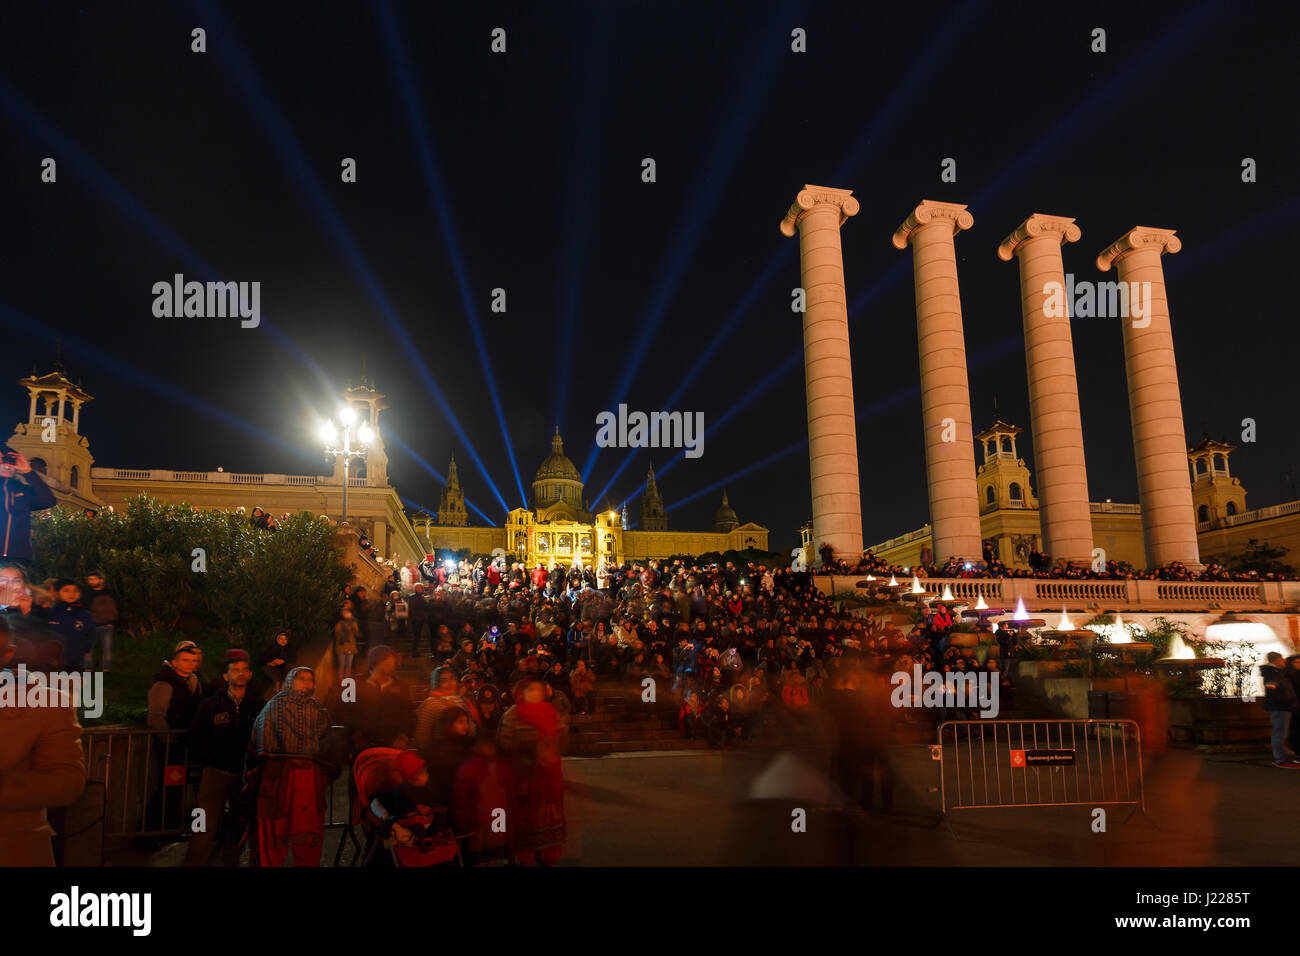 Barcelone, Espagne - 06 janvier 2017 : Grand groupe de personnes regarde la fontaine musicale de Montjuic, près du Musée National d'Art de Catalogne dans la nuit Banque D'Images